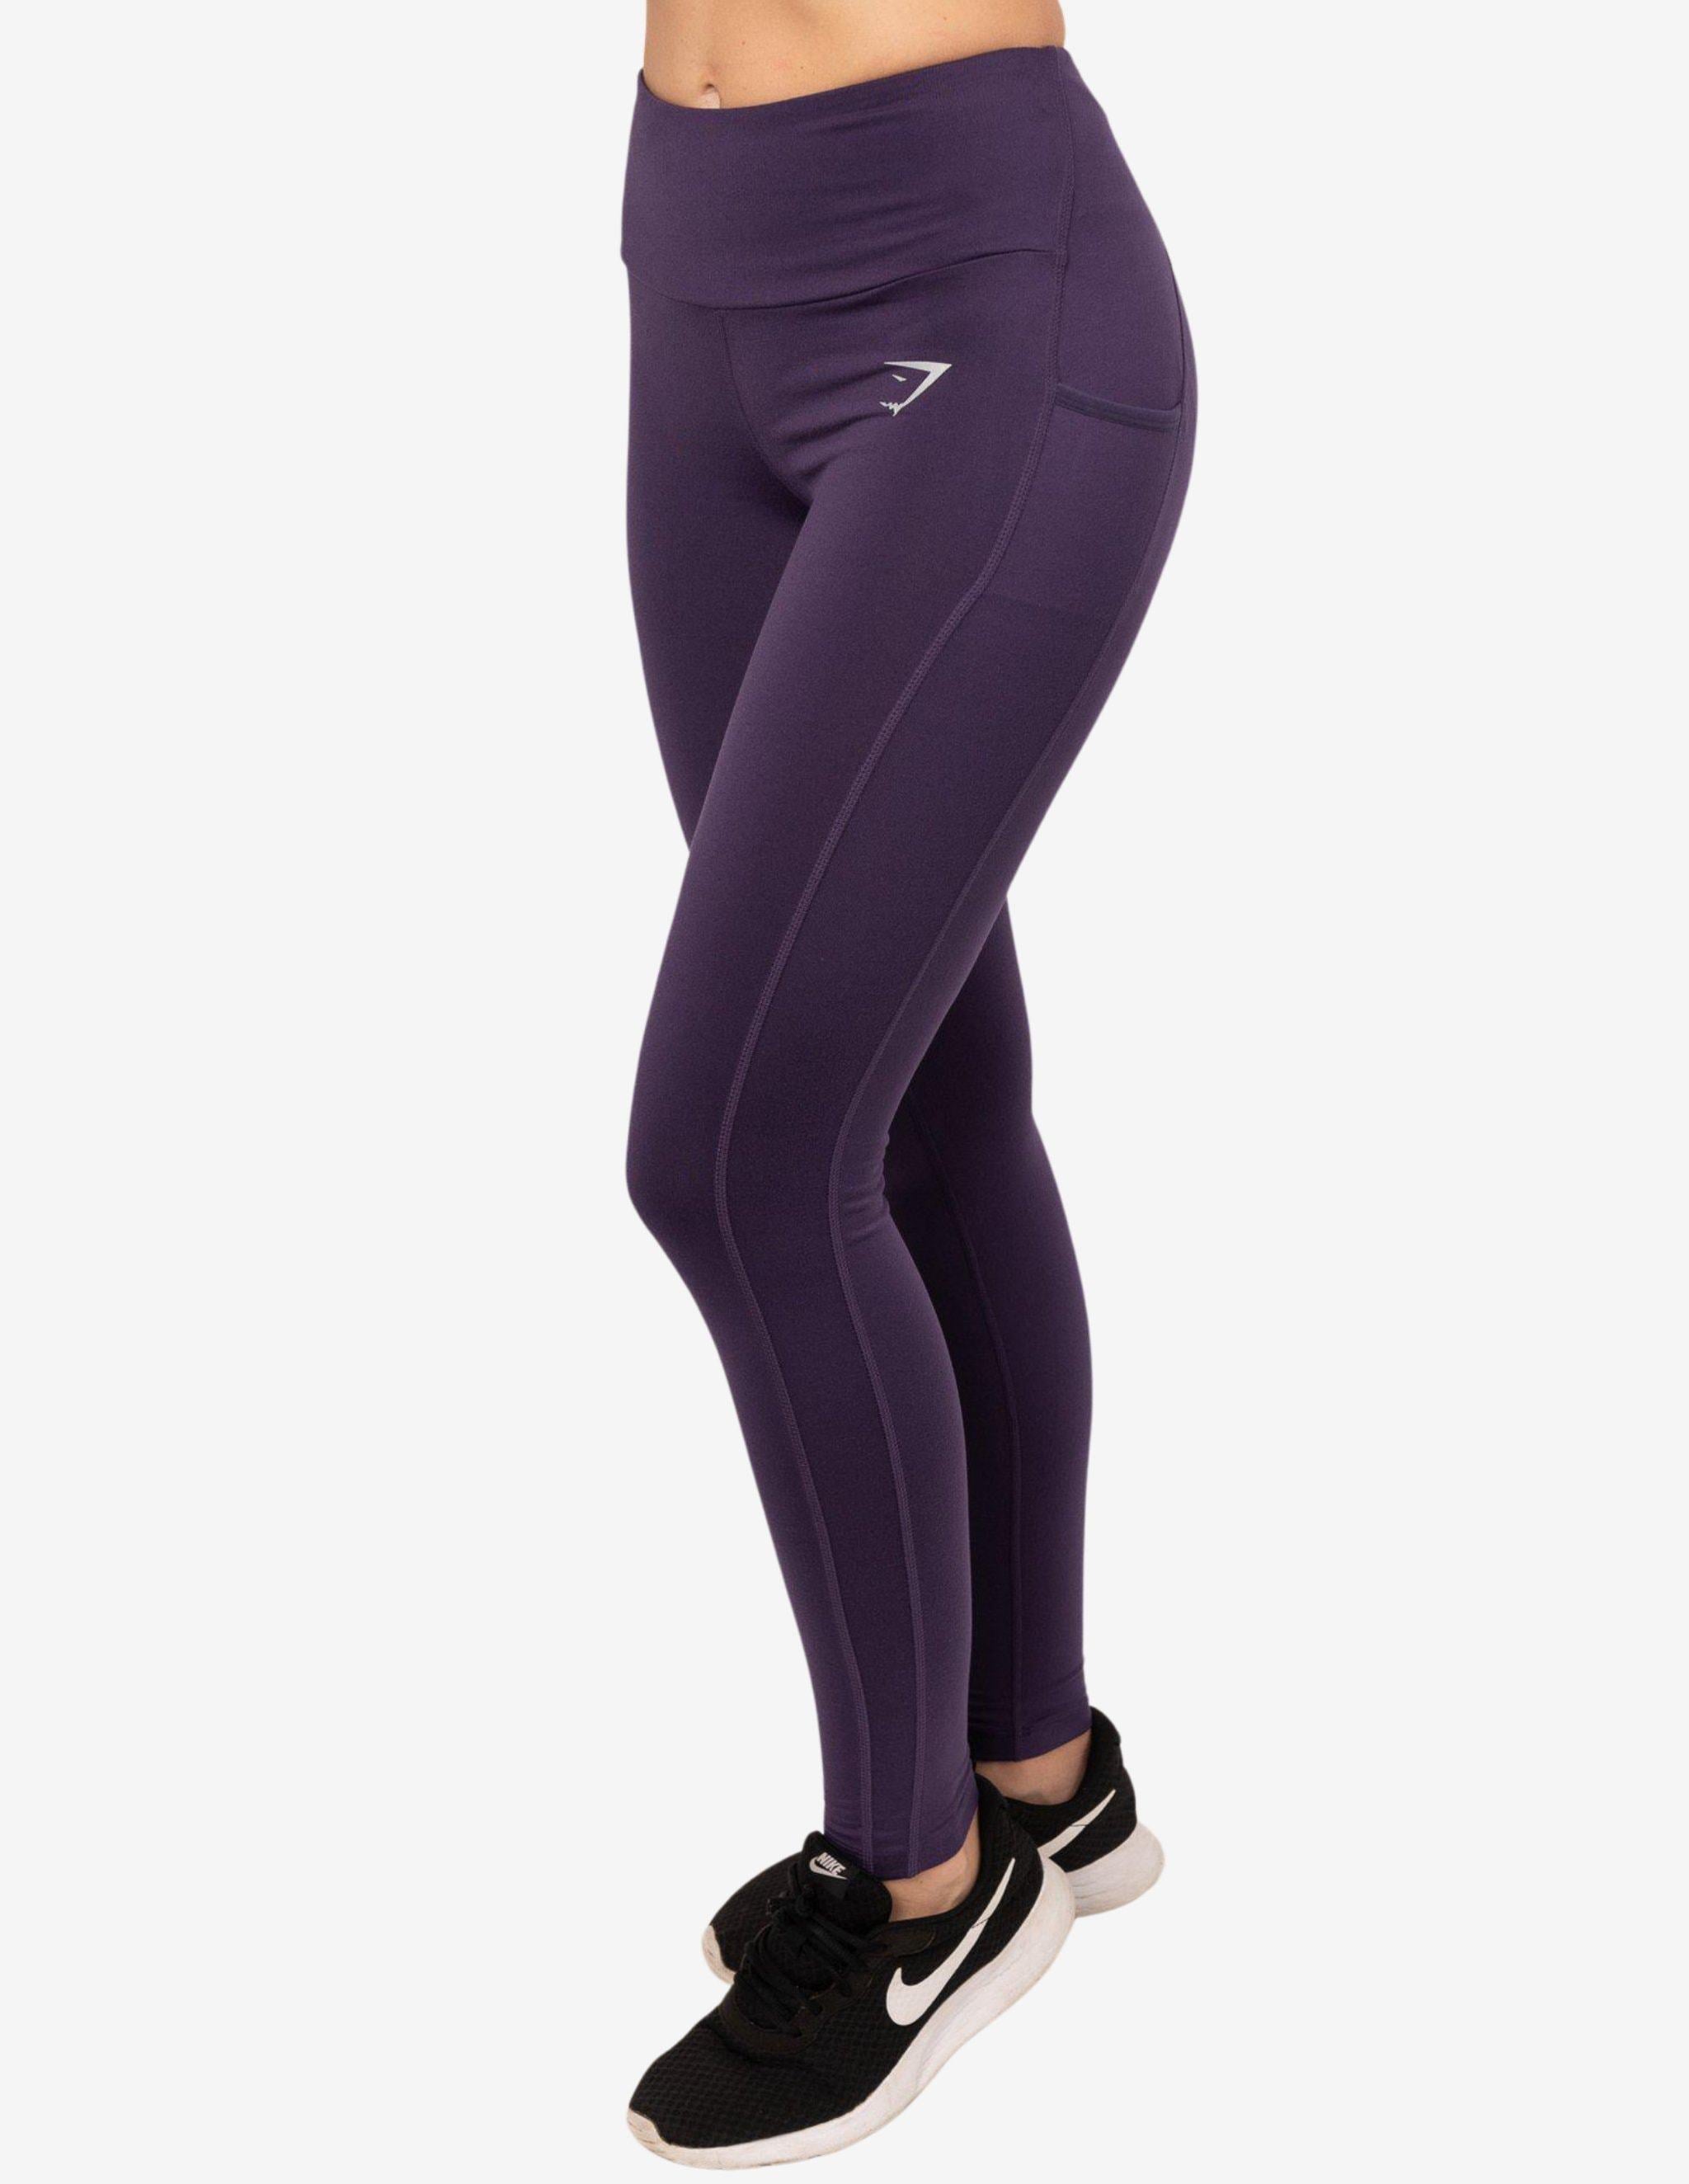 DARAIMU lavender gray leggings Yogasearcher S